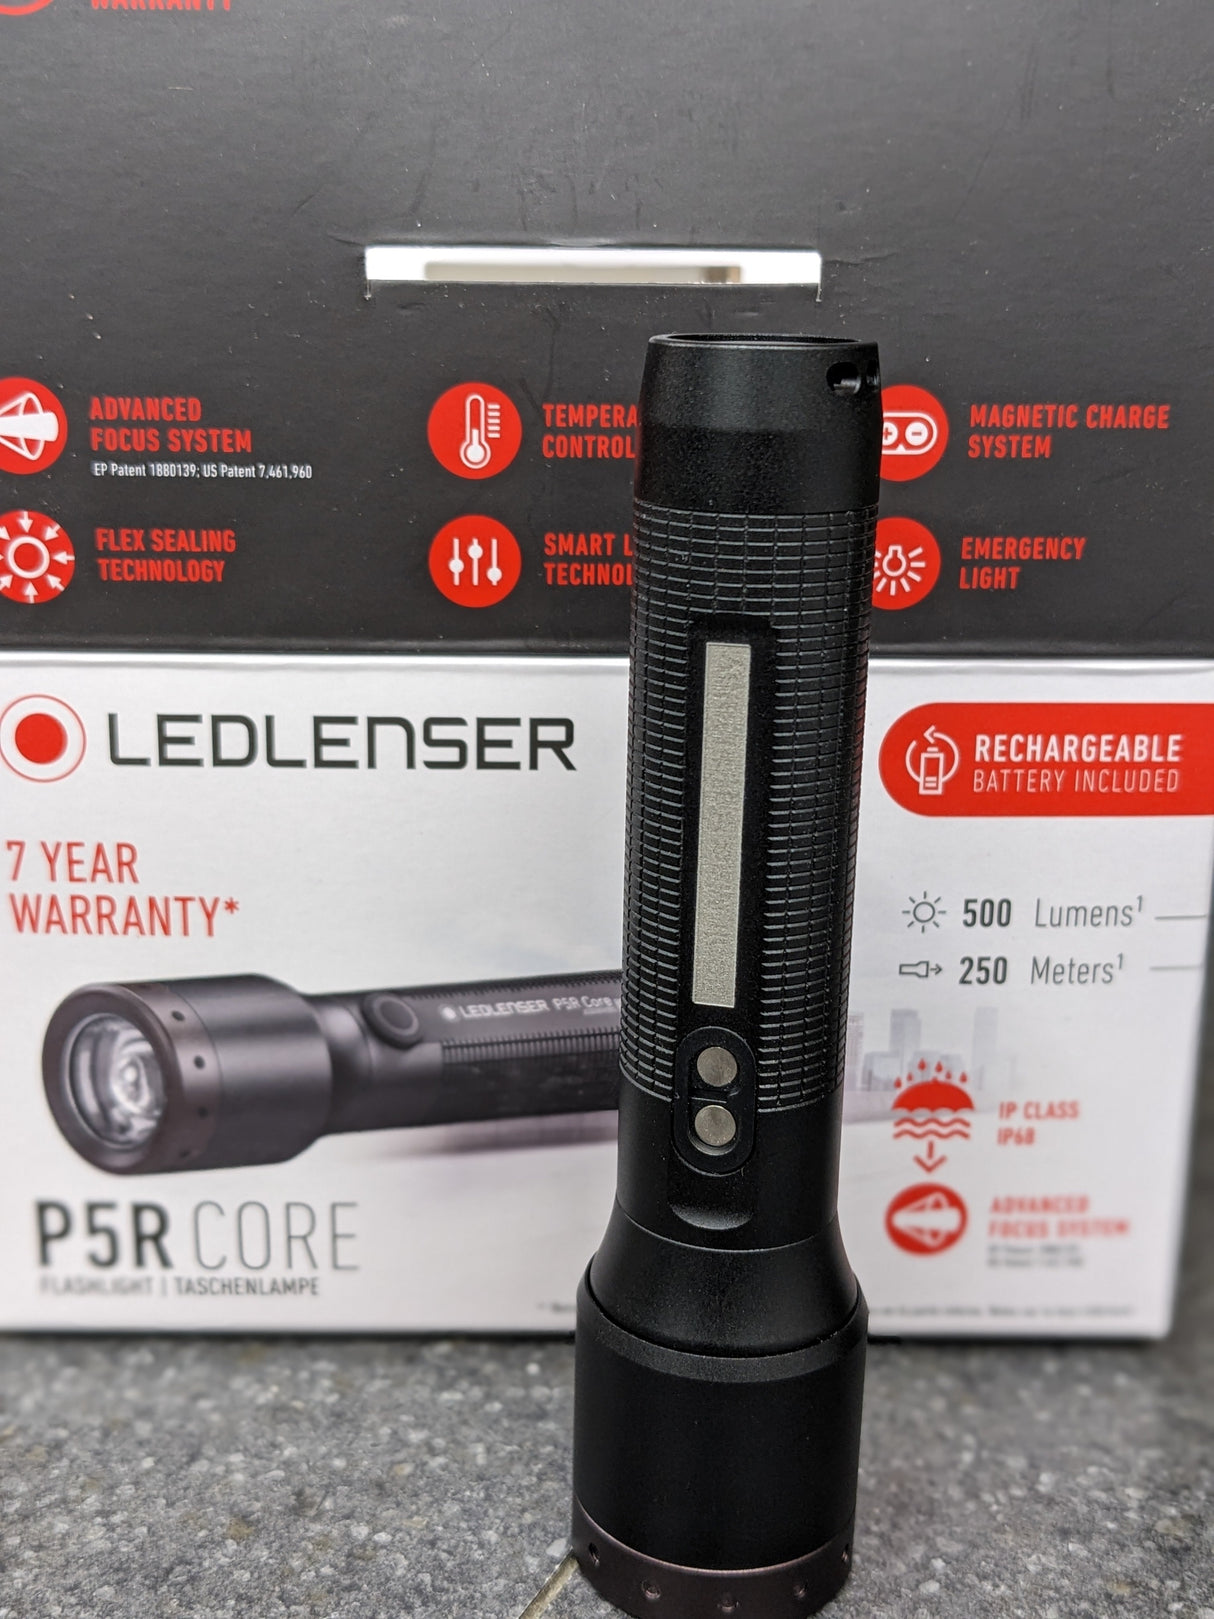 Ledlenser P5R CORE Rechargeable LED Torch - Seconds